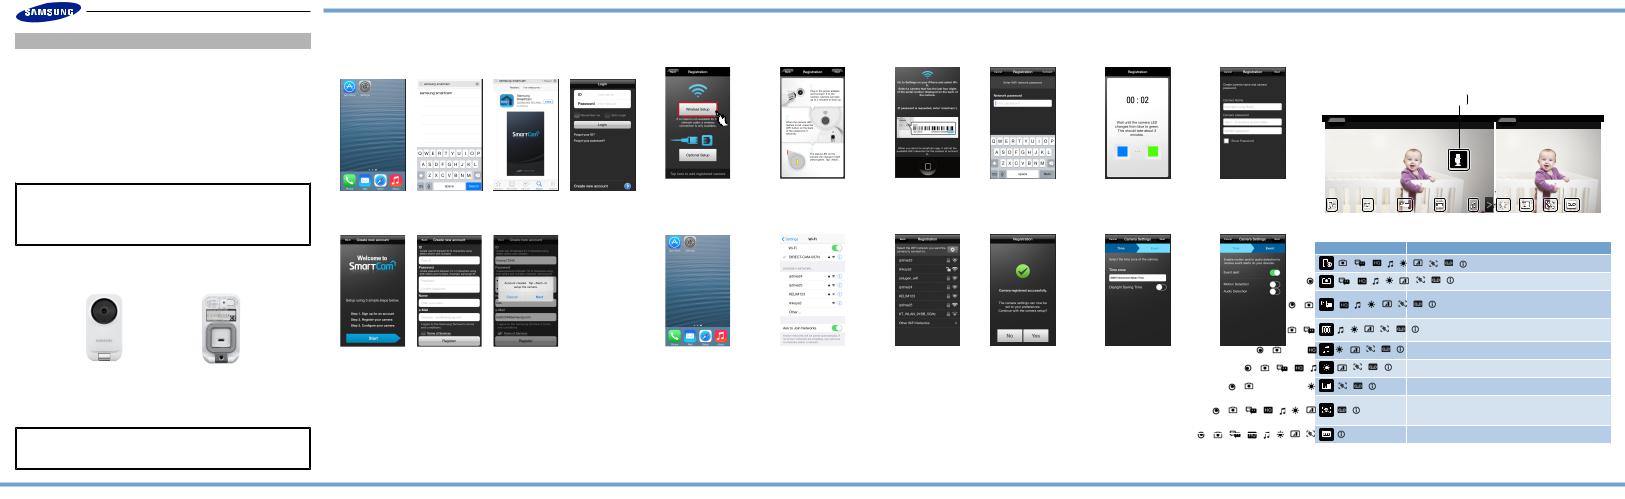 Samsung SmartCam Quick Start Guide